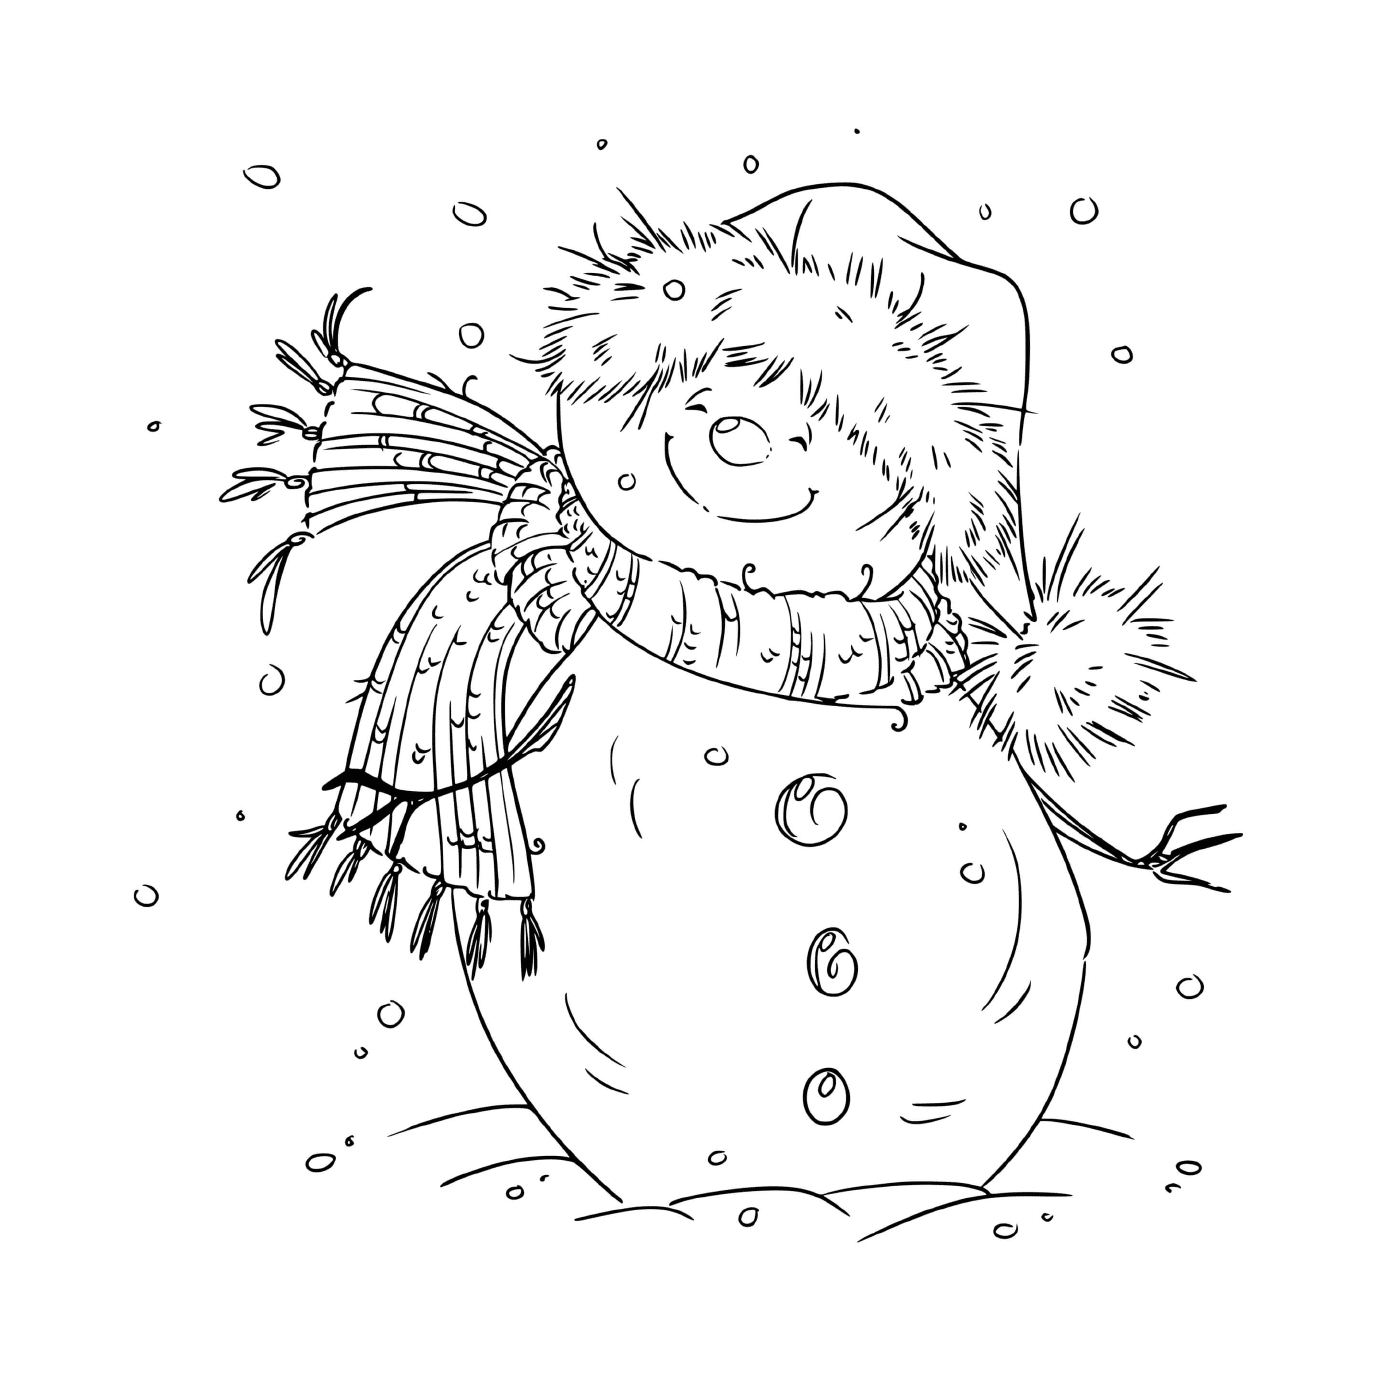  Un muñeco de nieve sonriendo por el viento fresco en Nochebuena 